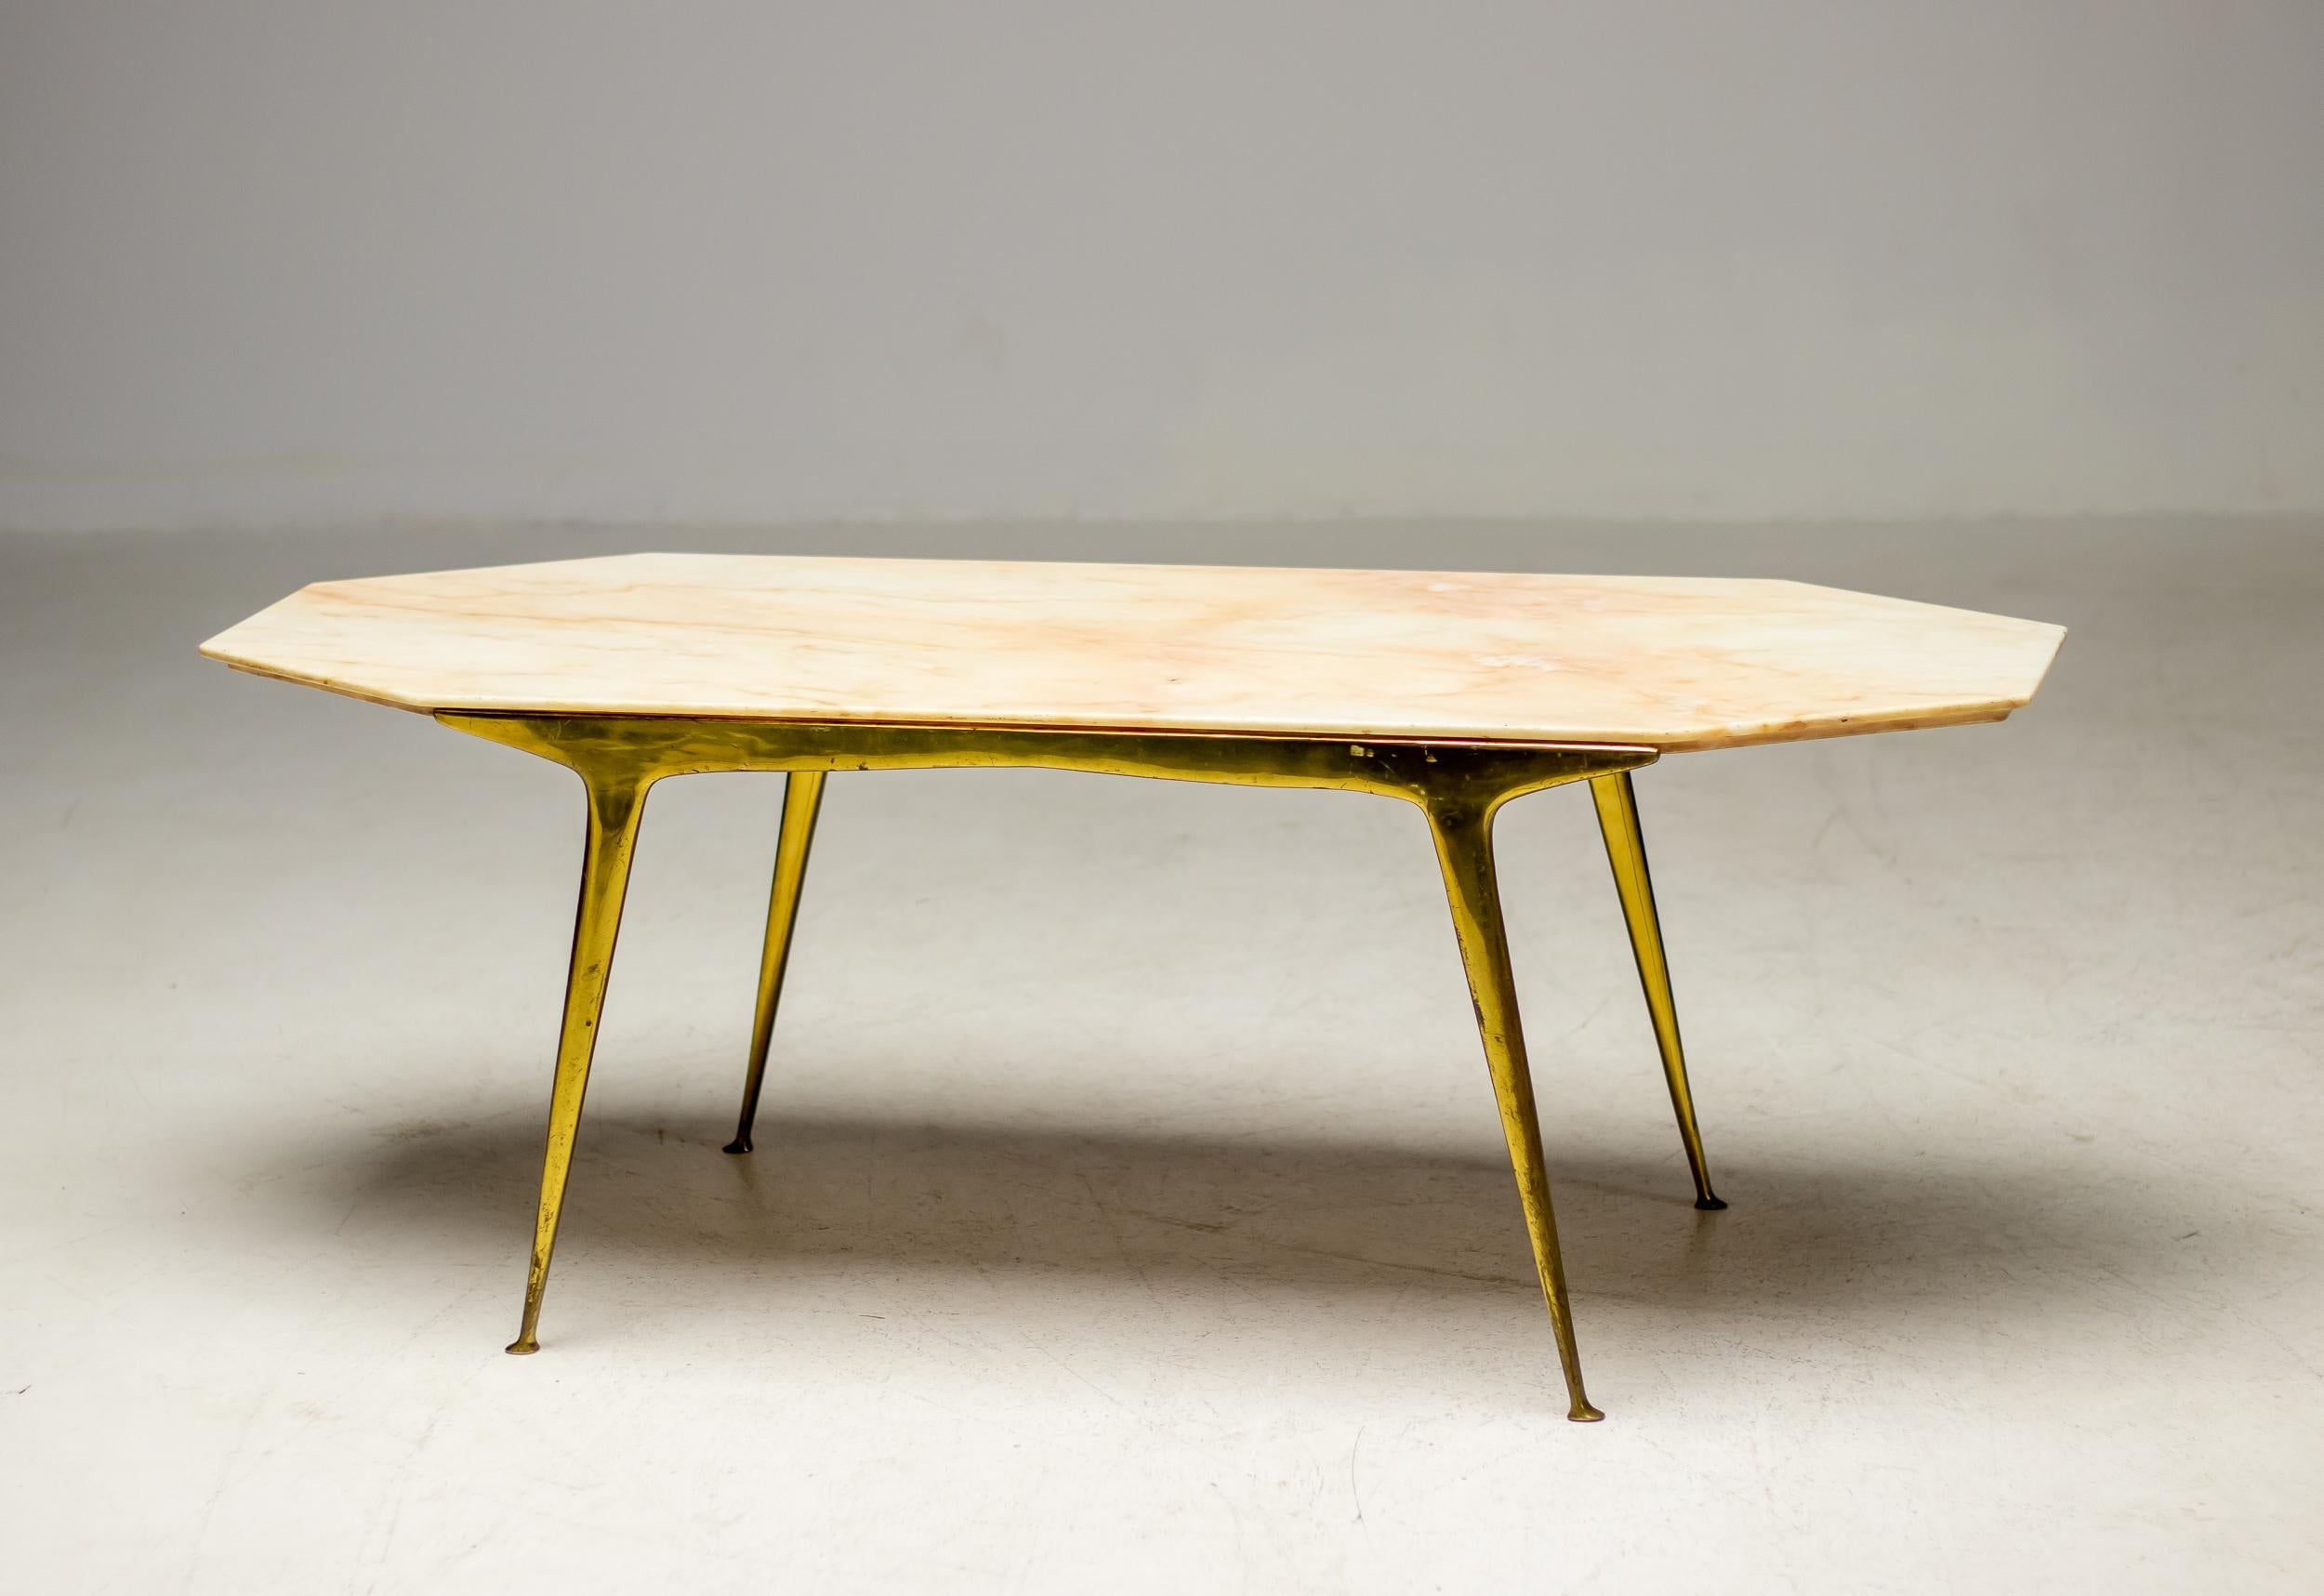 Très élégante table basse italienne des années 1950 avec une base en laiton poli et un plateau en marbre.
D'excellente facture italienne, elle est encore en parfait état avec une patine d'usage.
Rappelant le travail de Carlo Mollino, nous n'avons